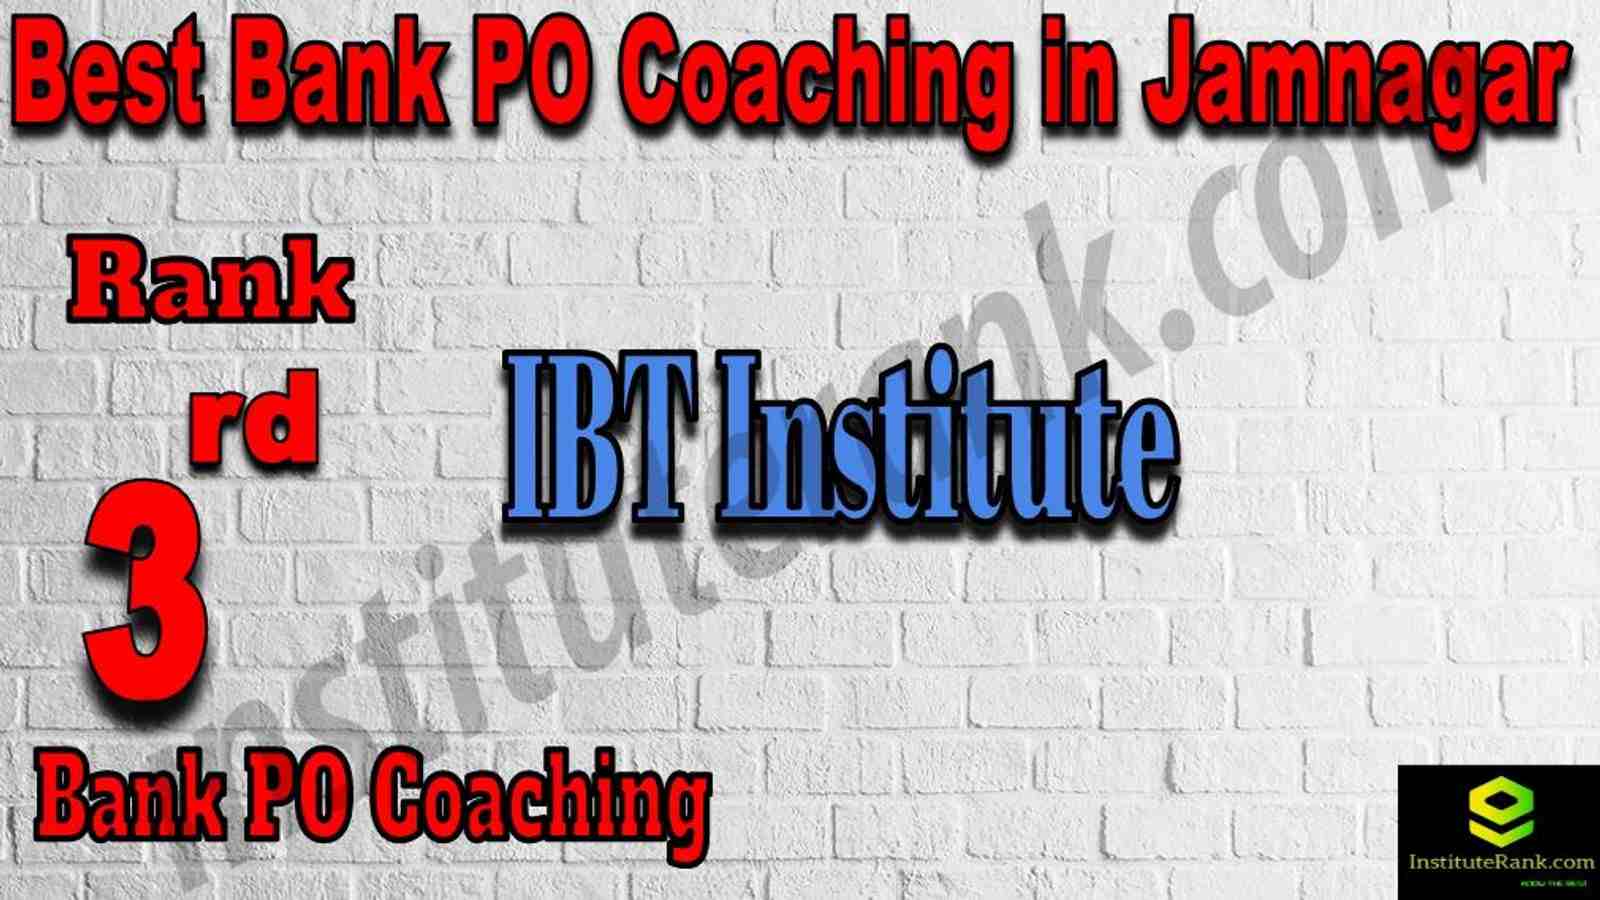 3rd Best Bank PO Coaching in Jamnagar